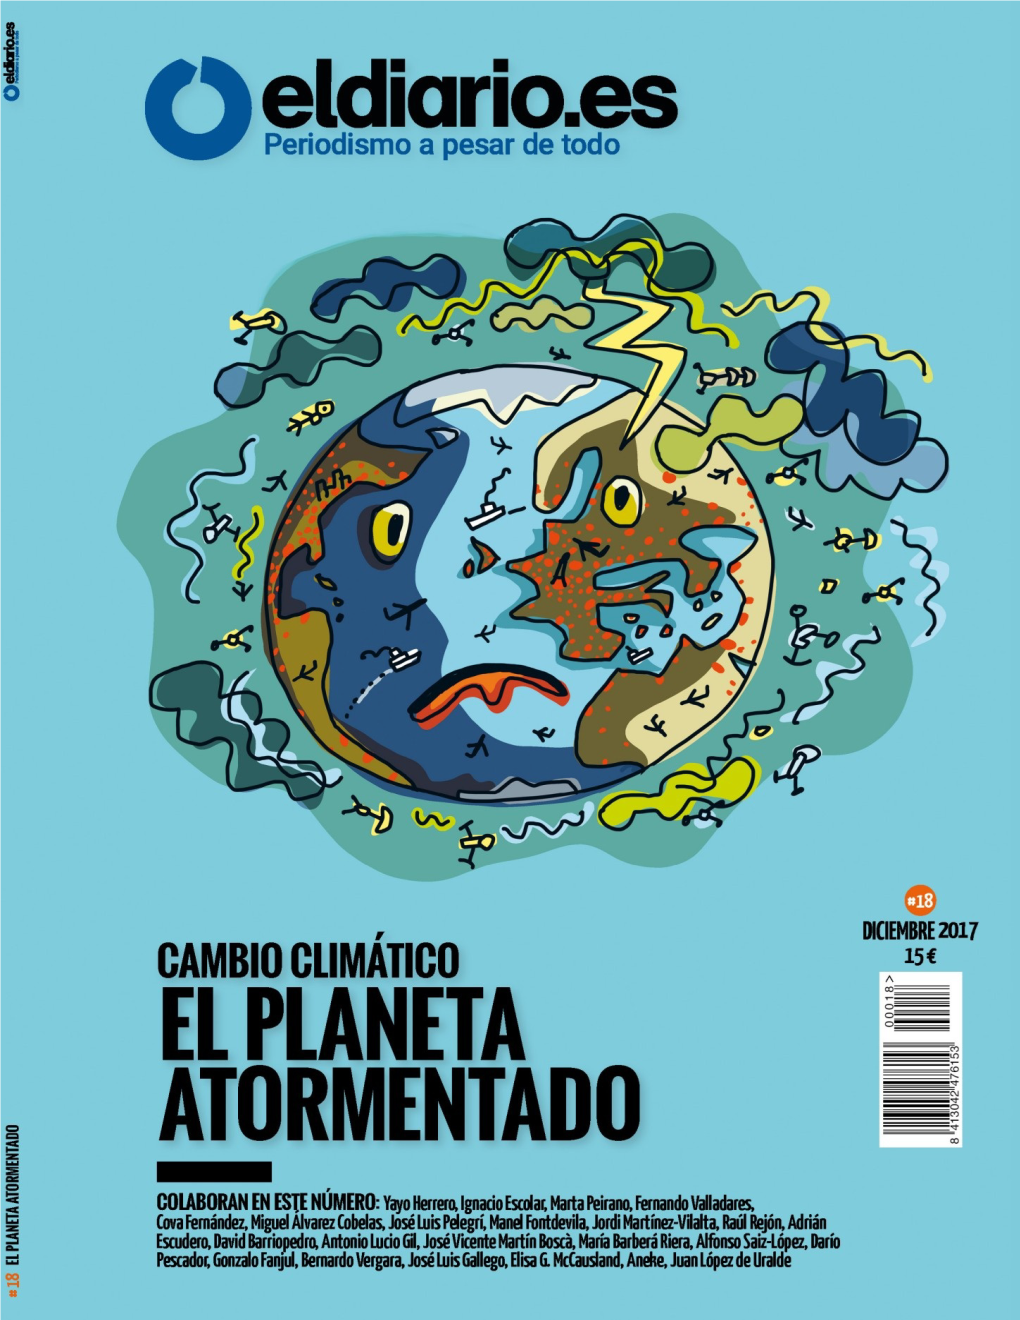 Eldiario.Es #18. El Planeta Atormentado